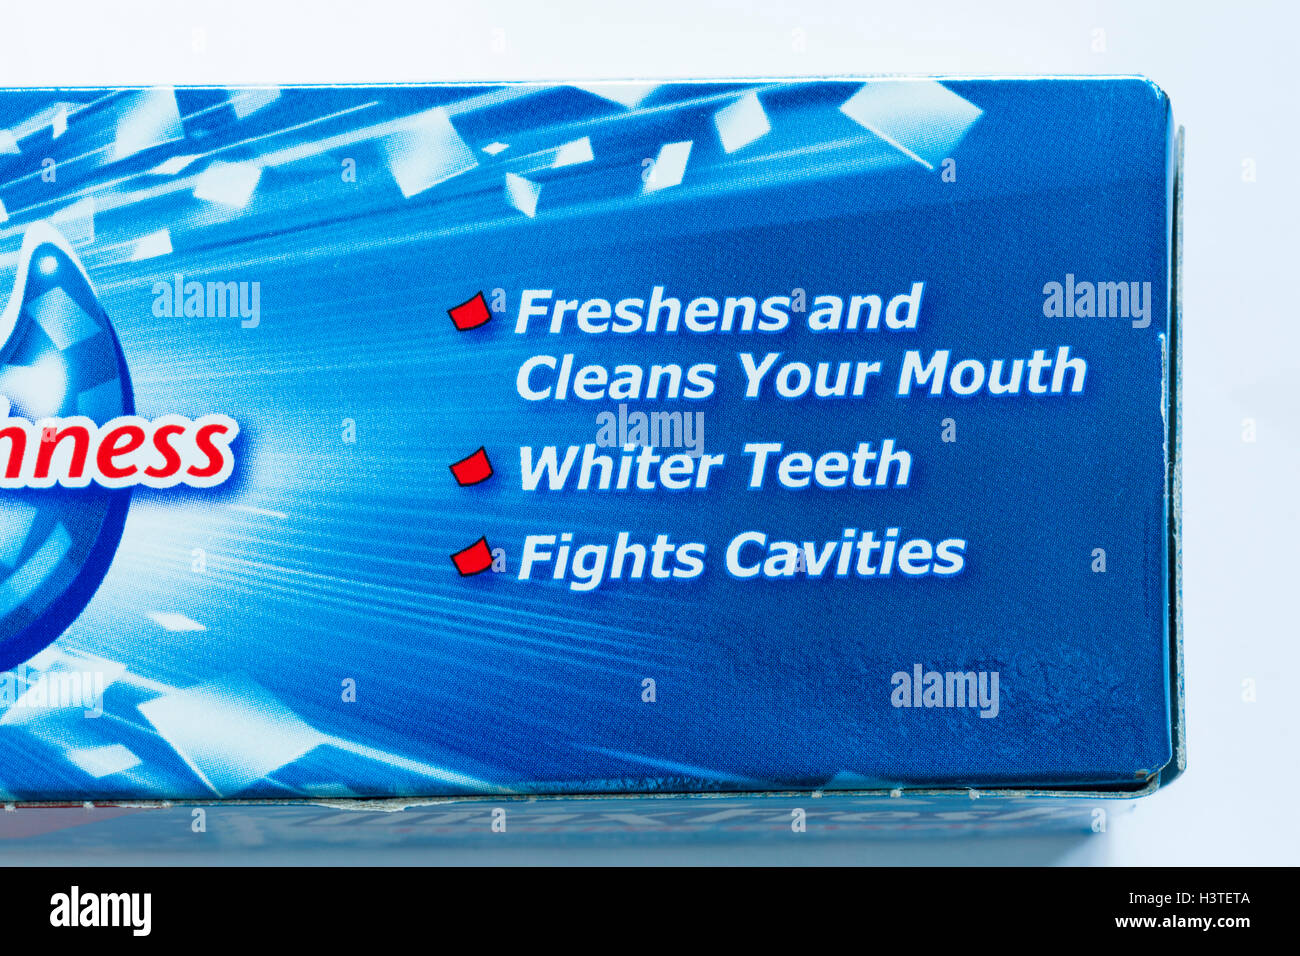 Información sobre caja de crema dental con fluoruro Colgate MaxFresh con cristales de refrigeración cool mint Foto de stock